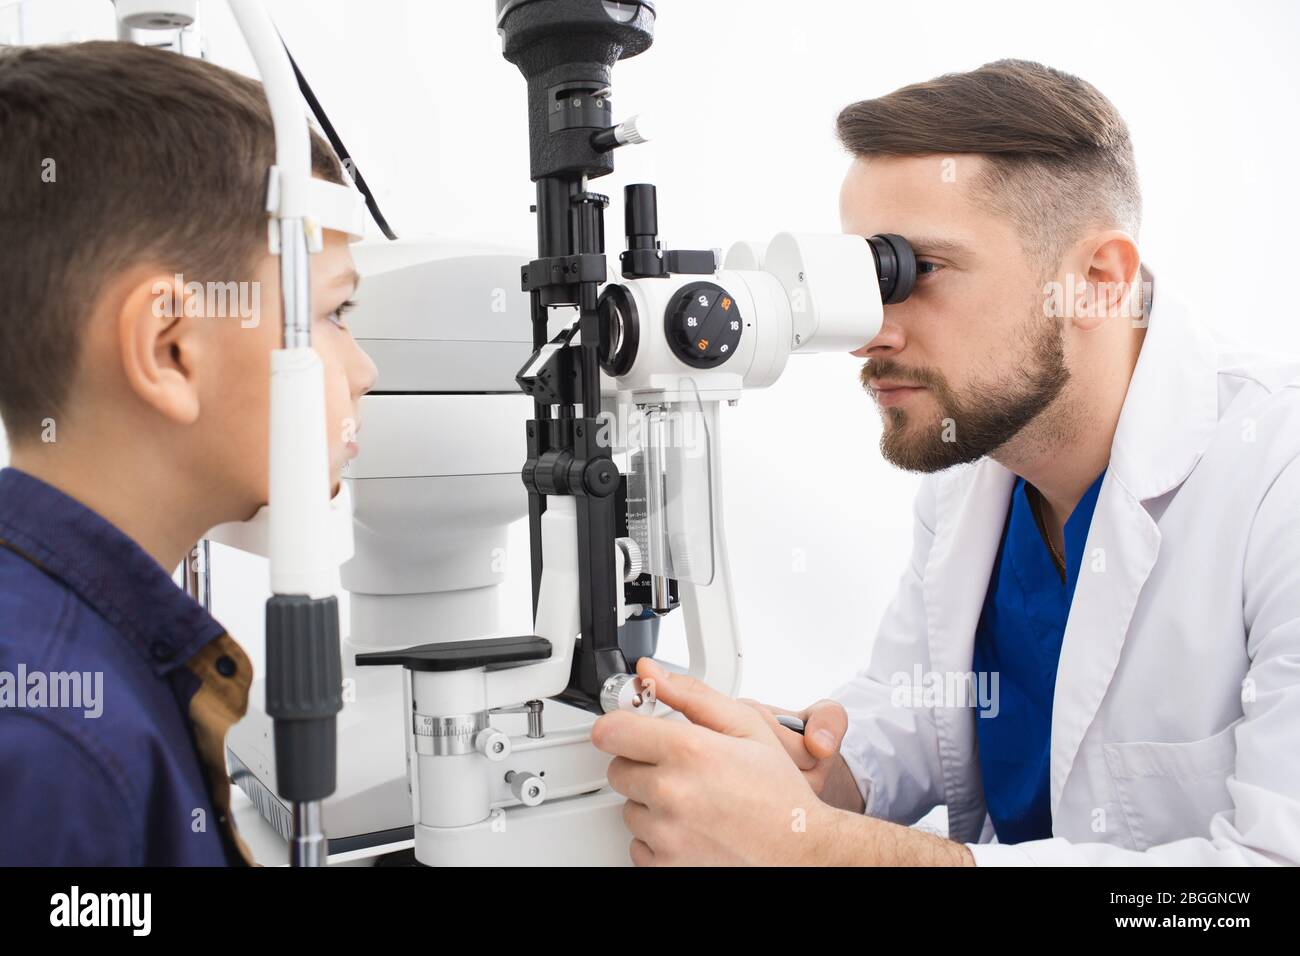 Un médecin expérimenté vérifie la vue d'un adolescent. Clinique moderne pour la vérification et le traitement de la vue Banque D'Images